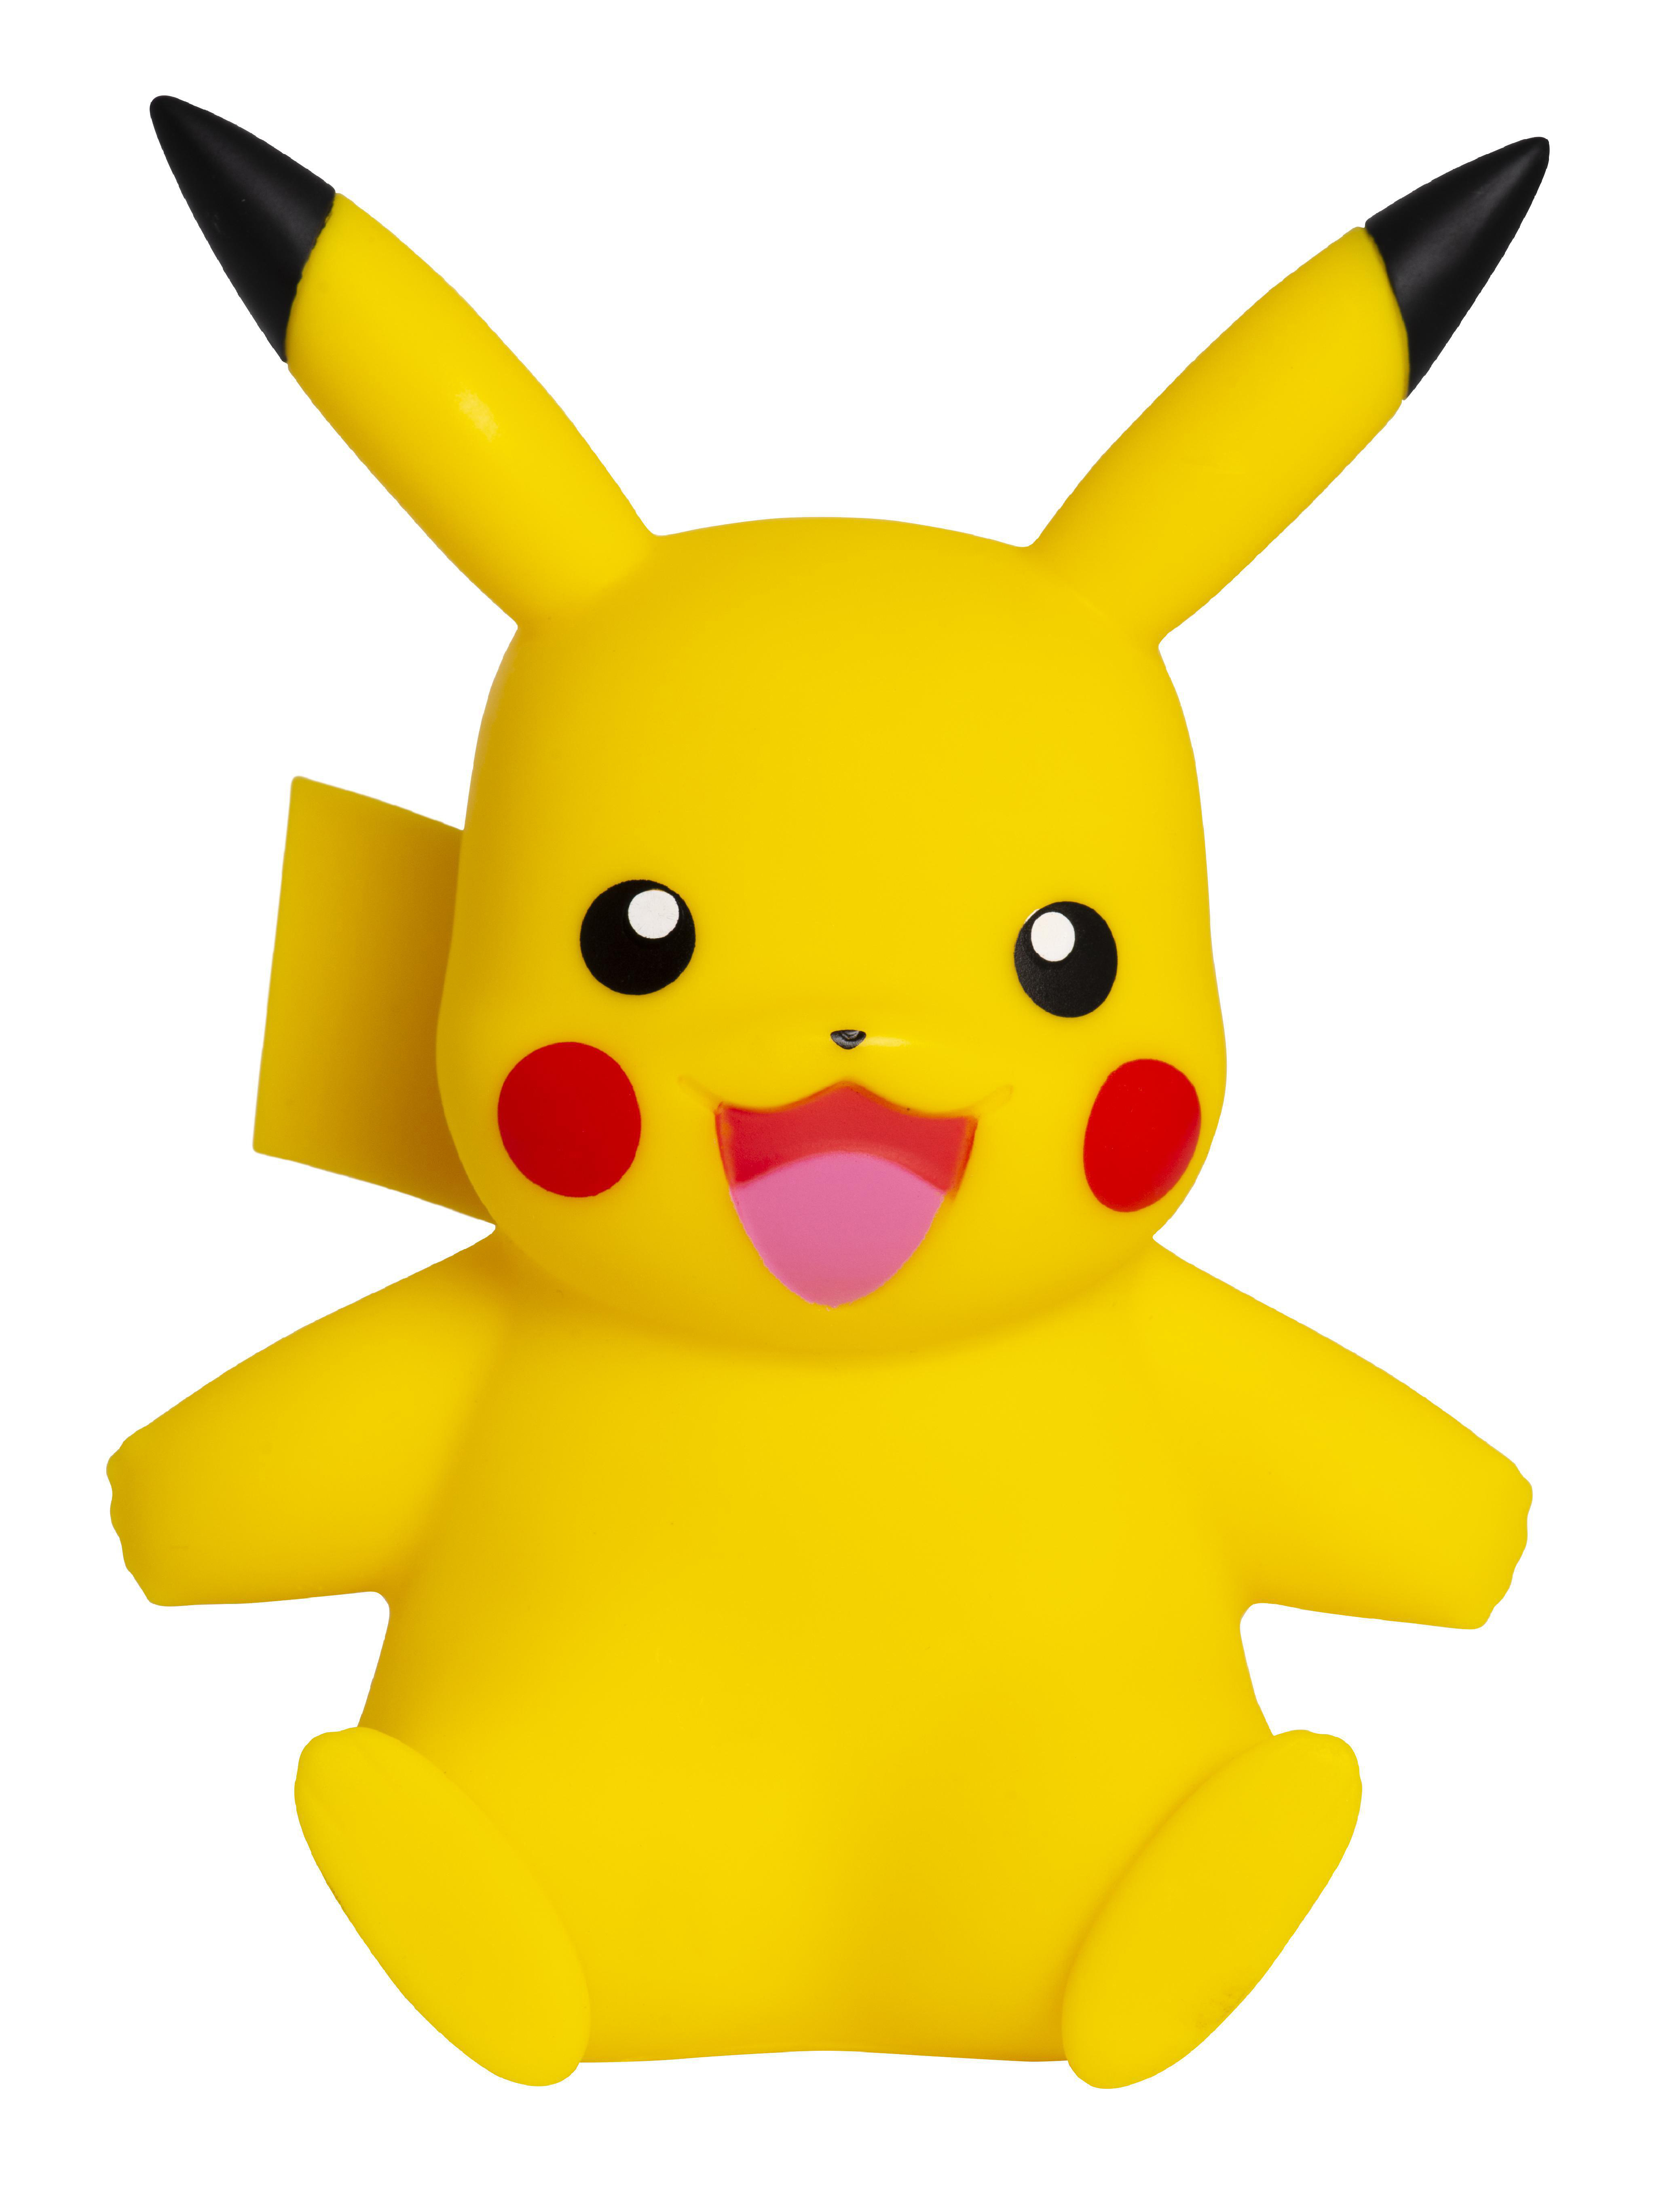 JAZWARES Pokémon Vinyl Figur Pikachu